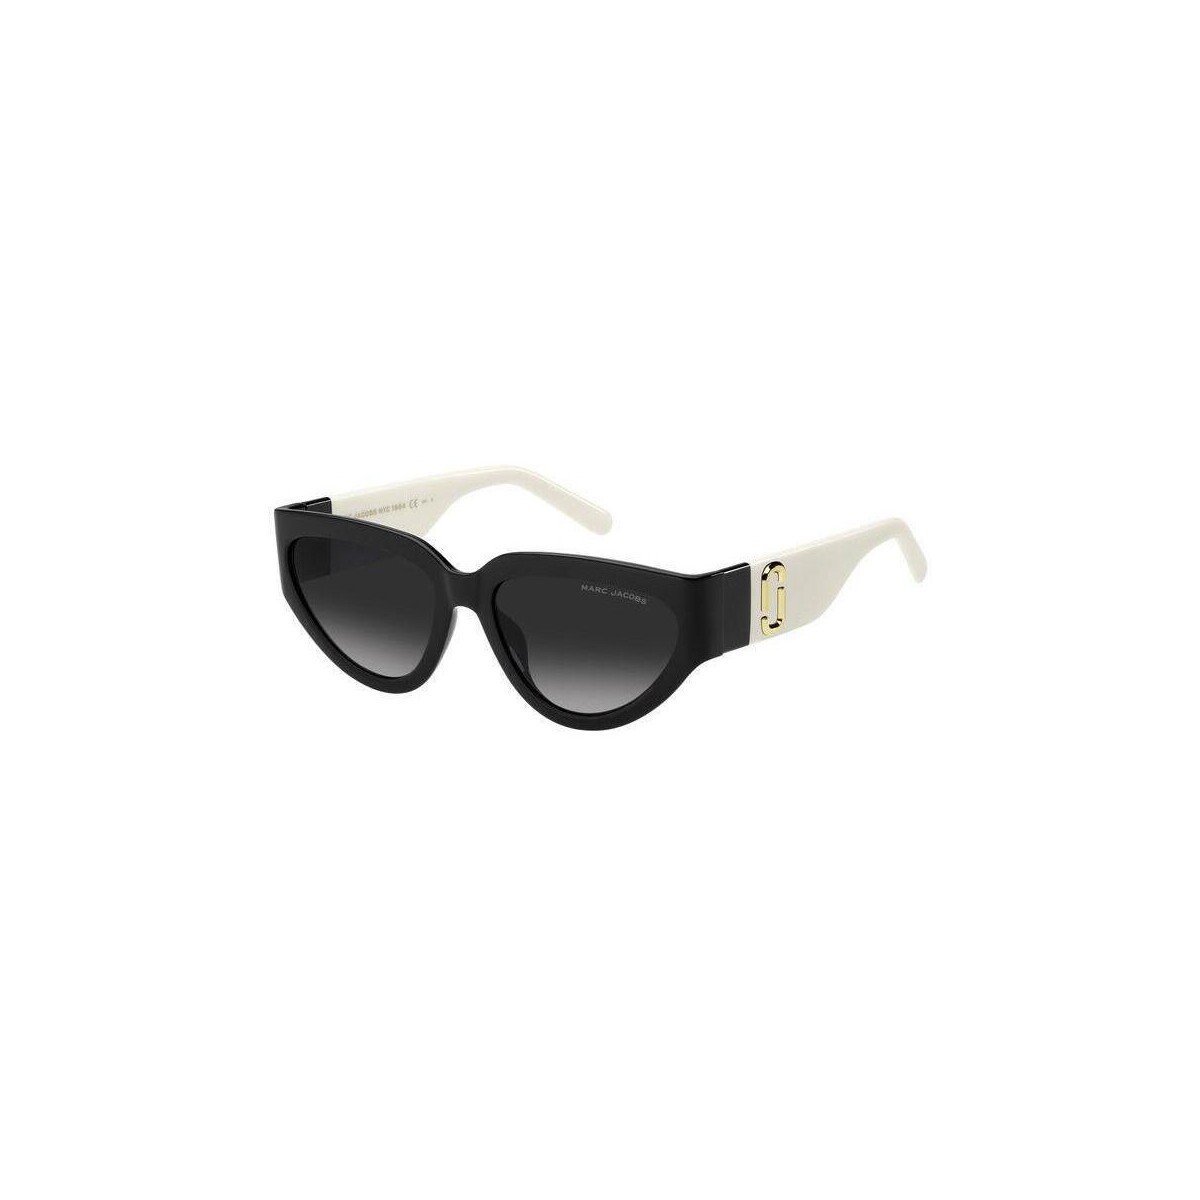 Orologi & Gioielli Donna Occhiali da sole Marc Jacobs MARC 645/S Occhiali da sole, Nero/bianco/Grigio scuro, 57 mm Altri